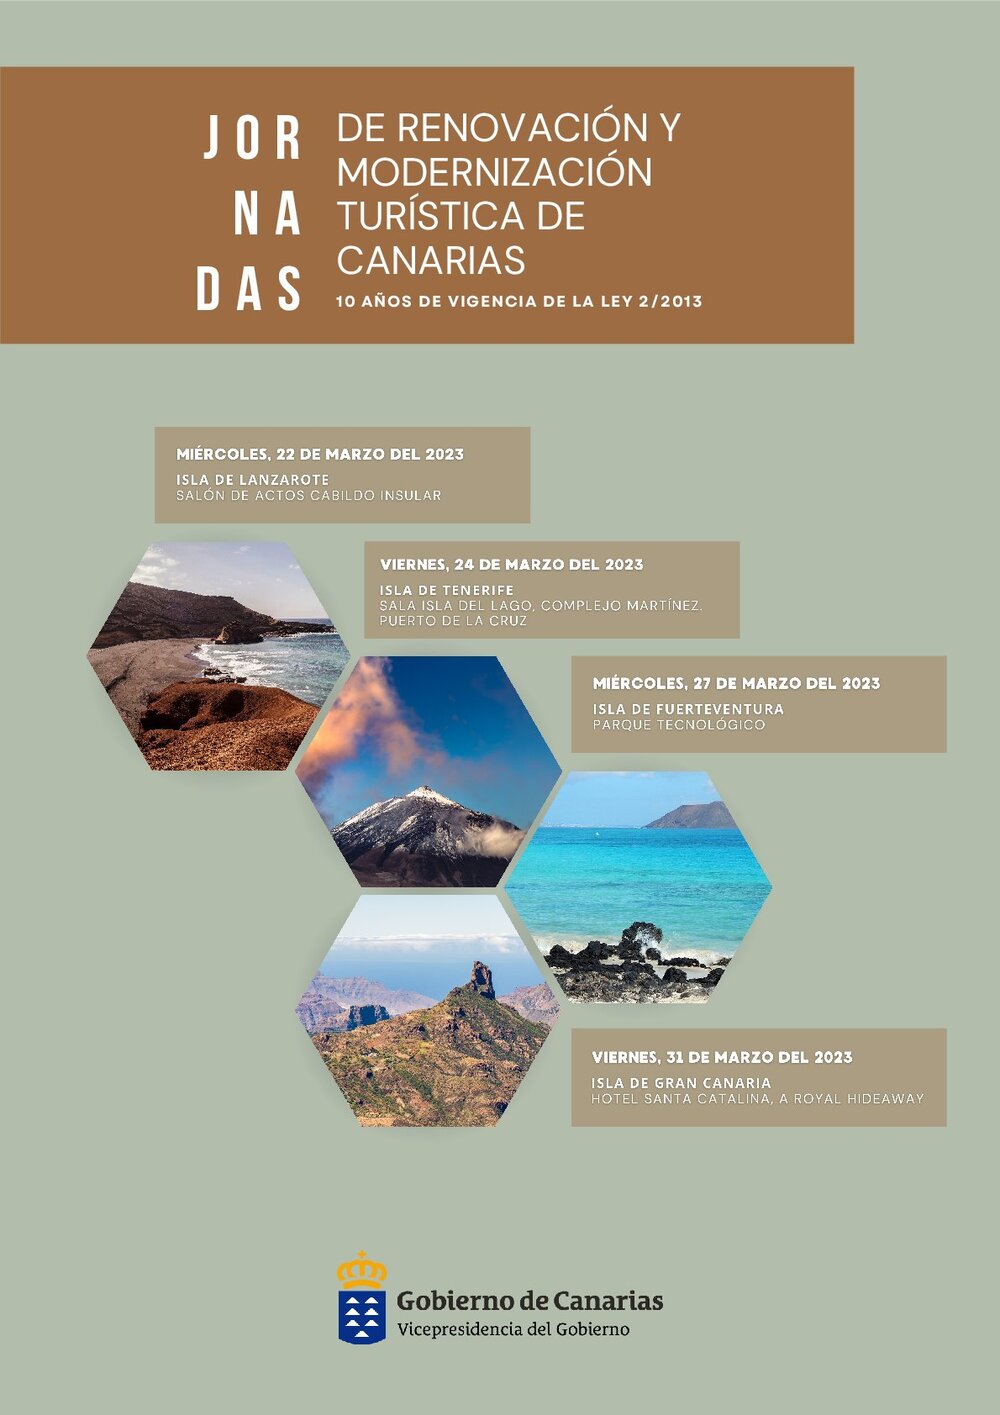 Renovación y modernización turística en Canarias